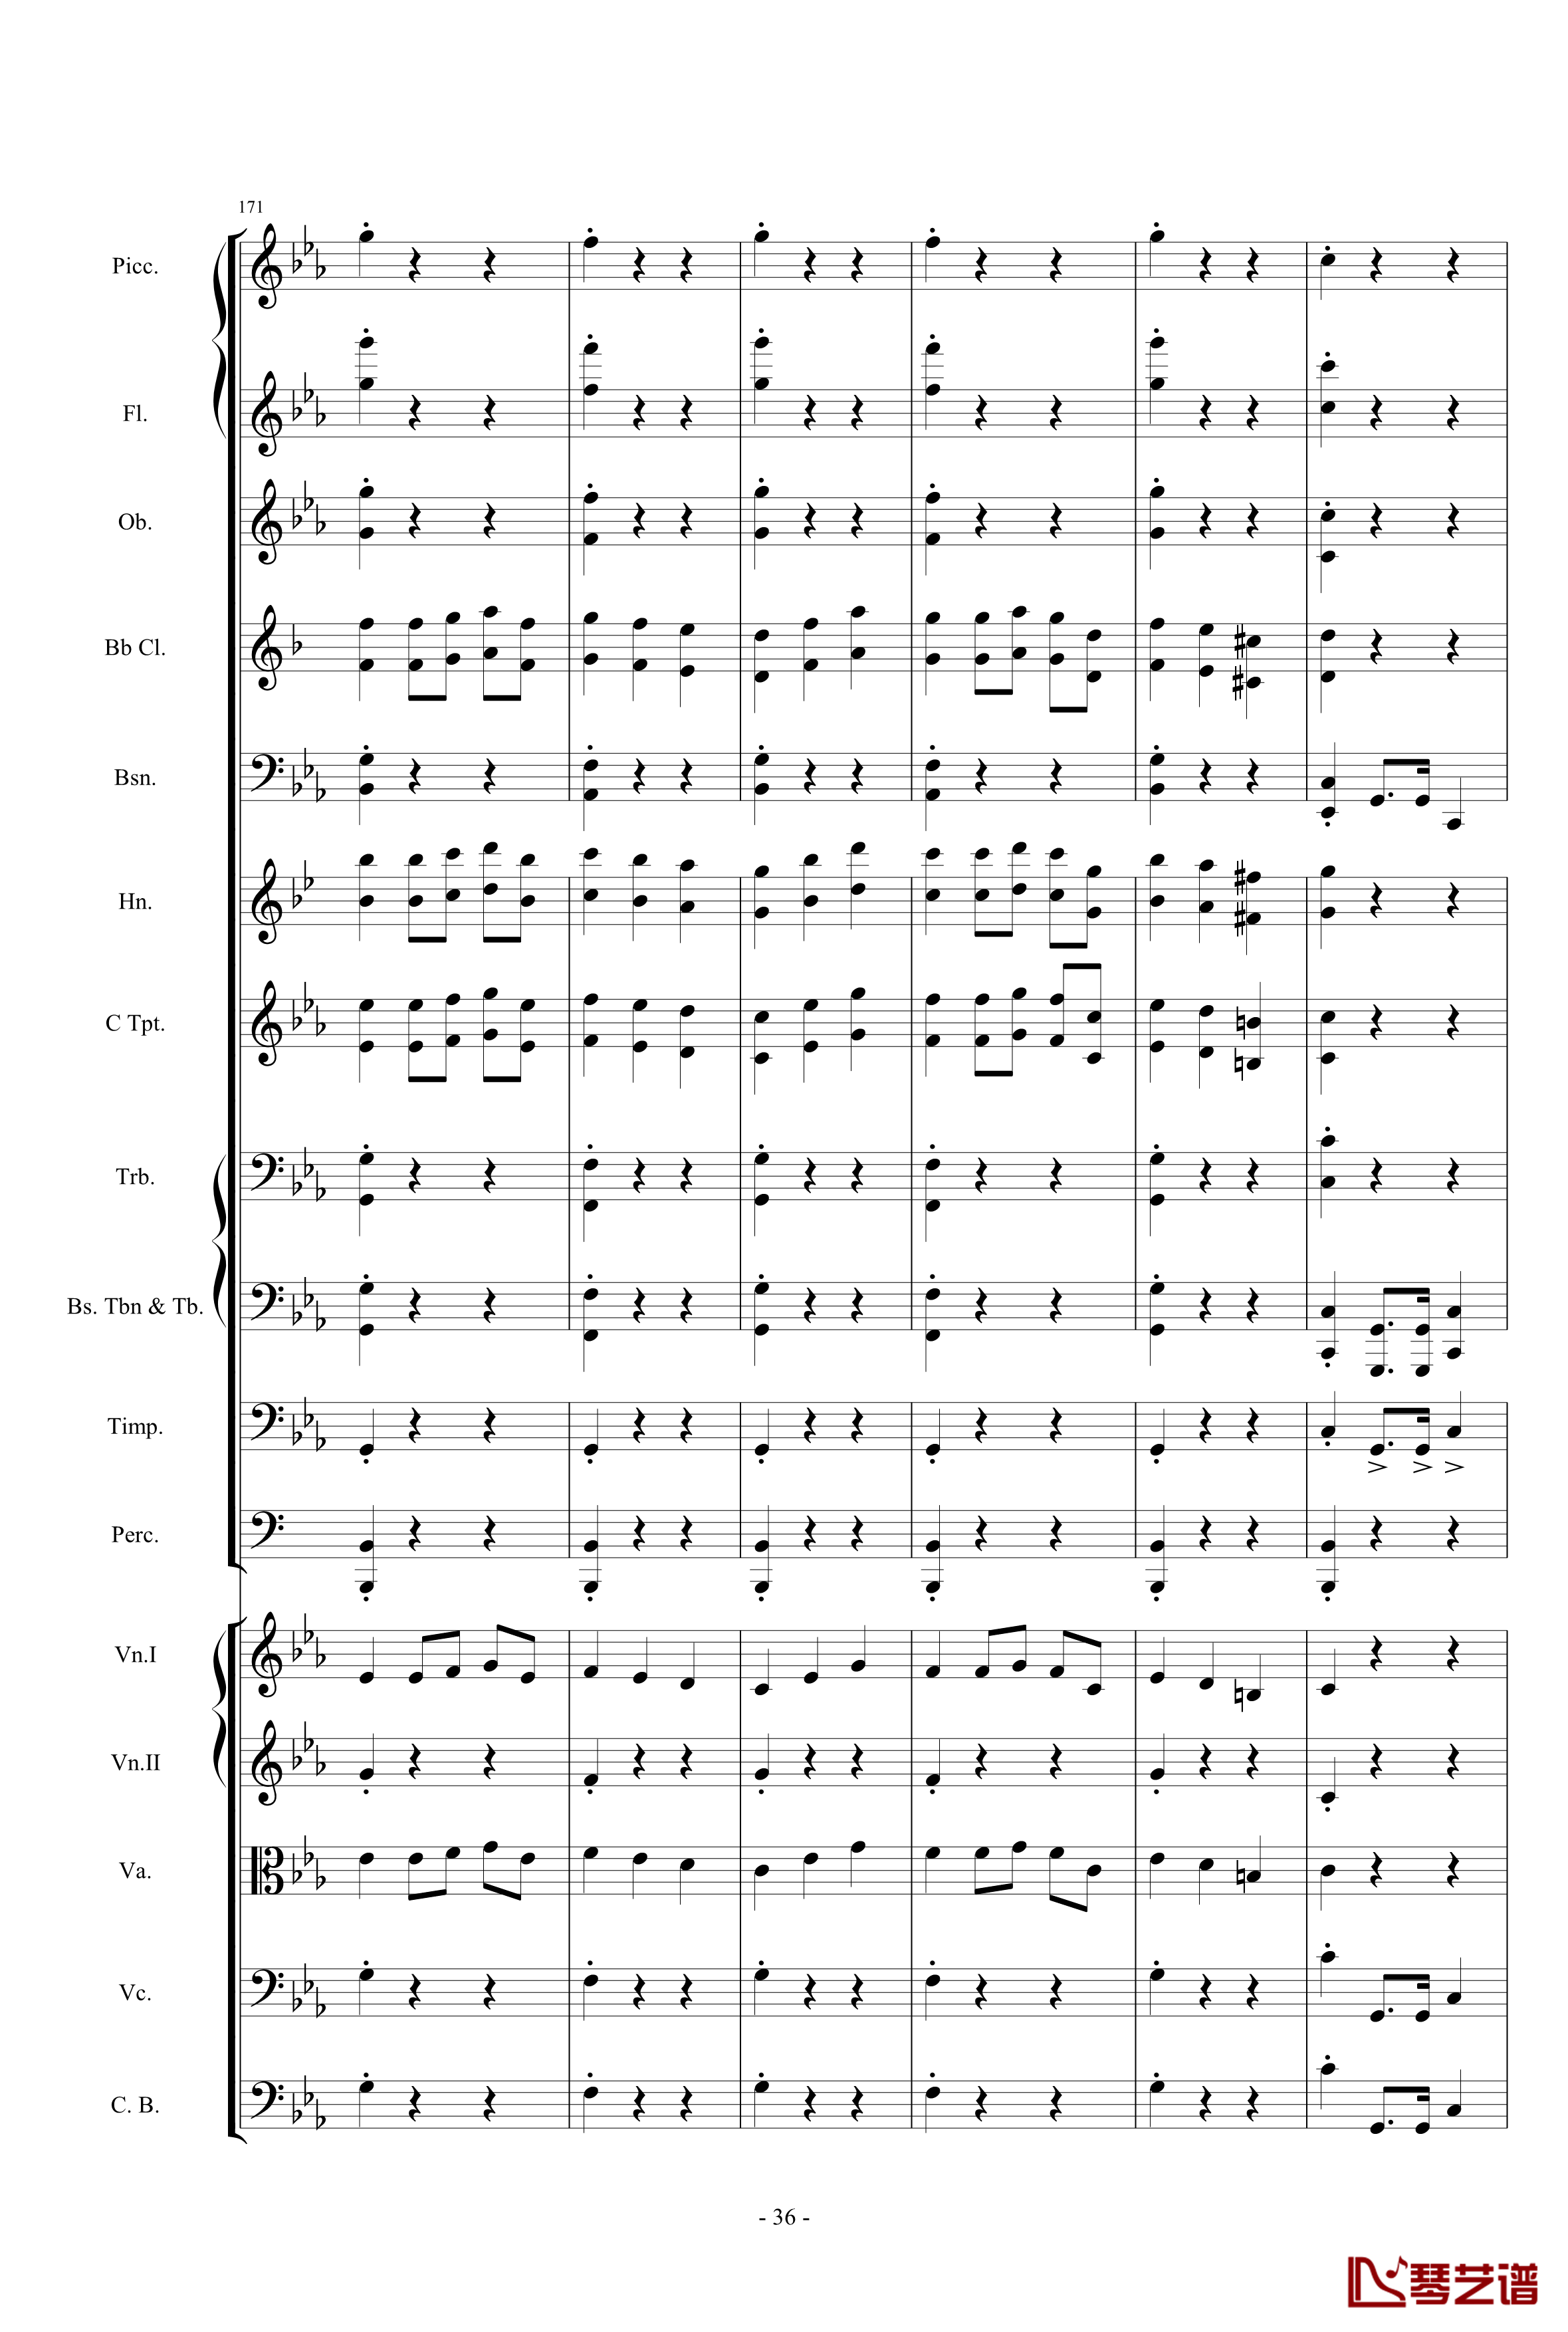 愤怒的小鸟交响曲第三乐章Op.5 no.3钢琴谱-1057257836